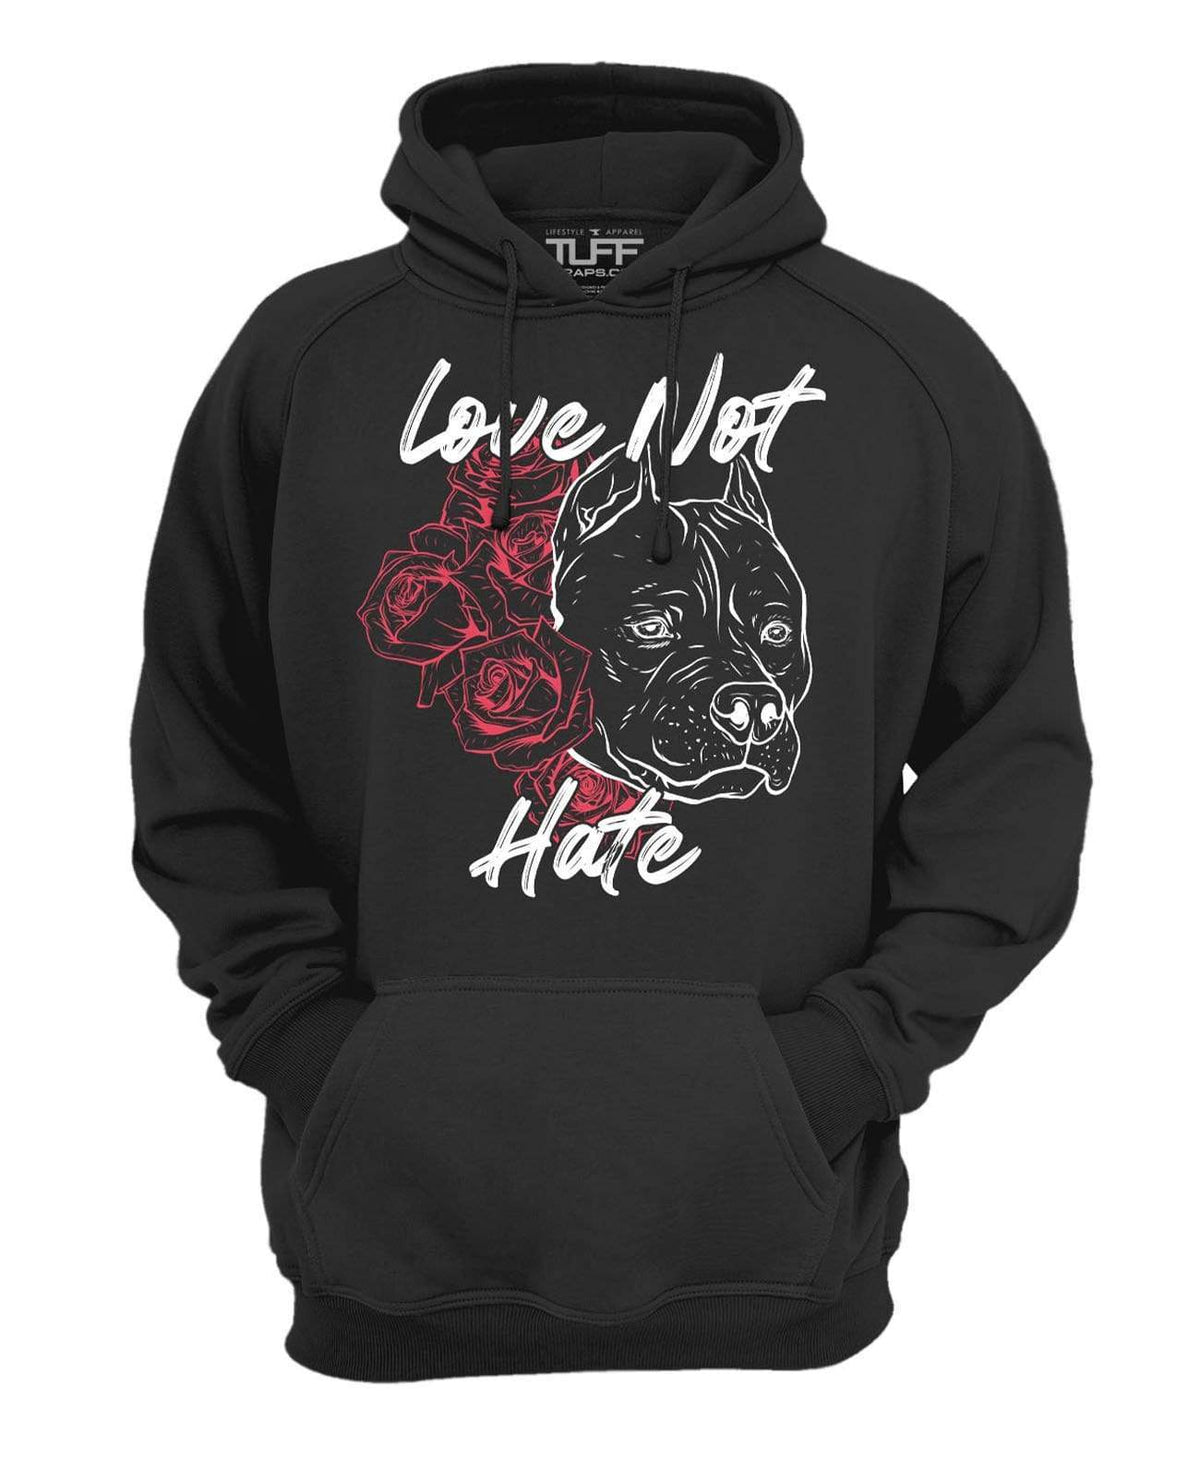 Love Not Hate Hooded Sweatshirt XS / Black TuffWraps.com